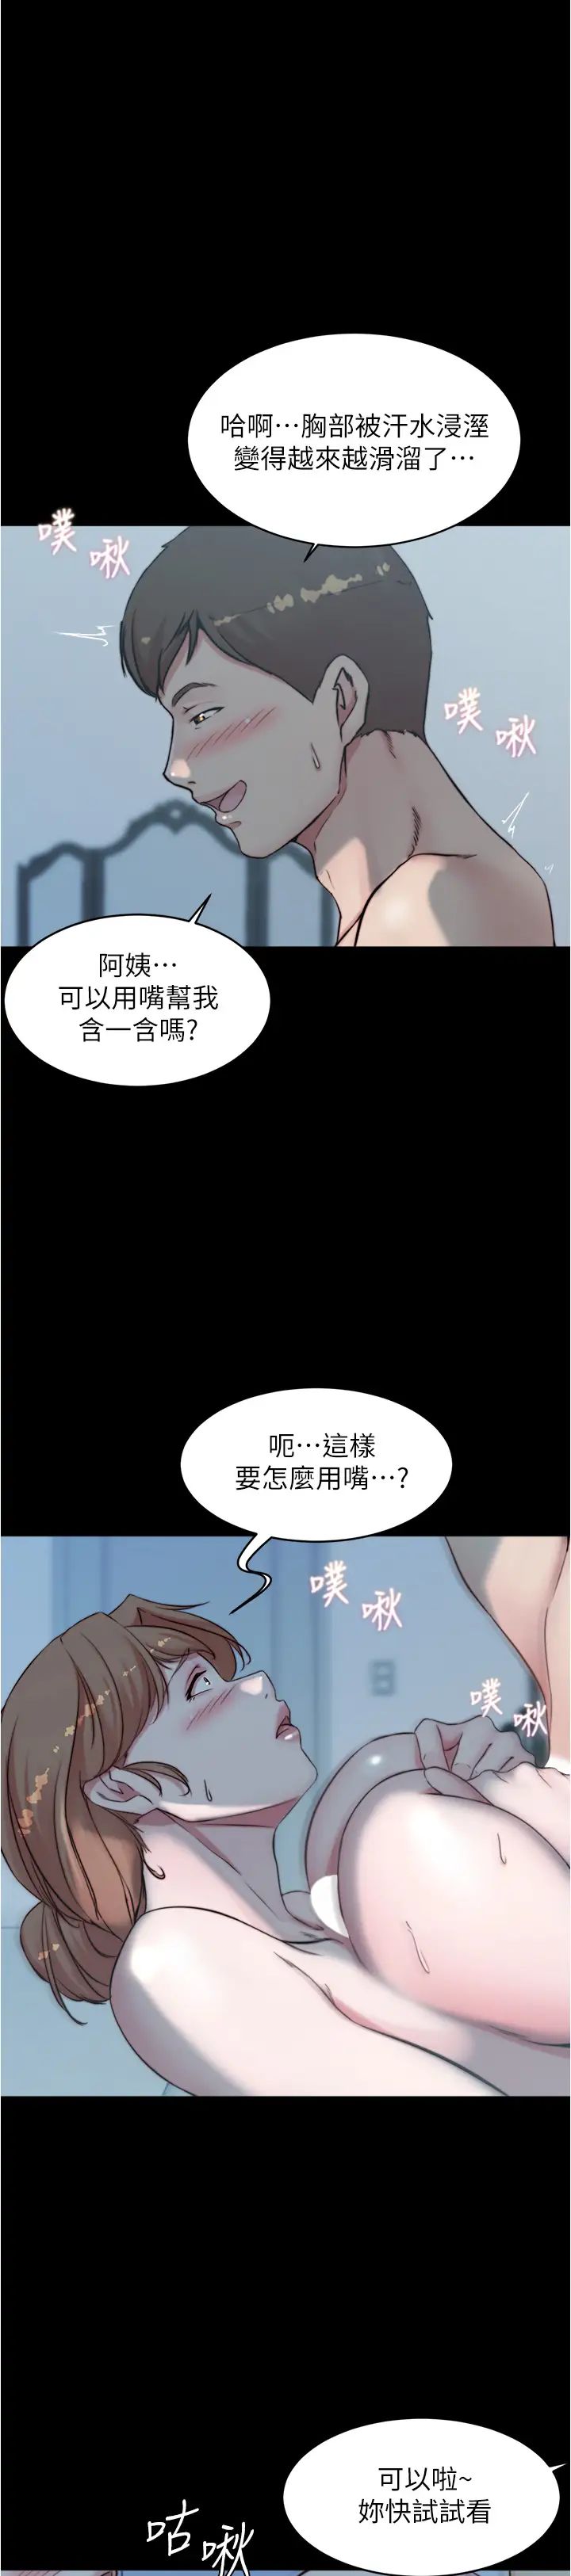 韩国污漫画 小褲褲筆記 第56话 测试内裤笔记的极限 2